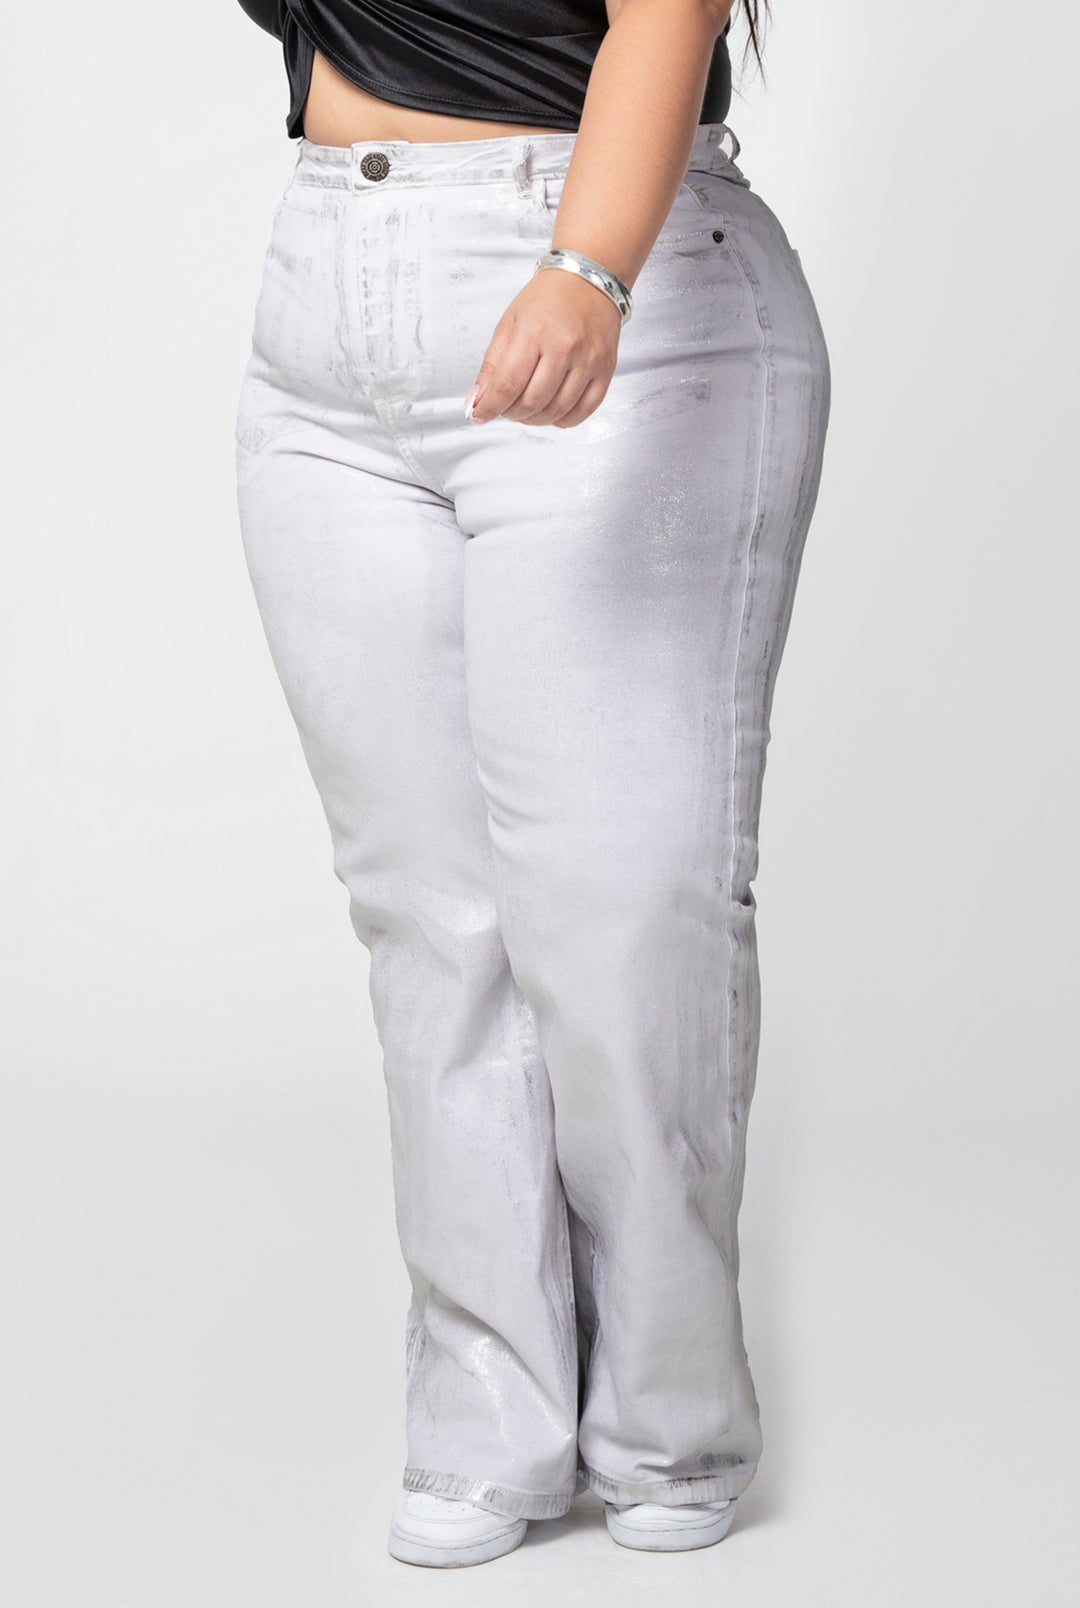 "jeans talla plus" "jeans para mujer tiro alto" "jeans plus size colombia" "jeans levanta cola control abdomen" "pantalones talla plus"